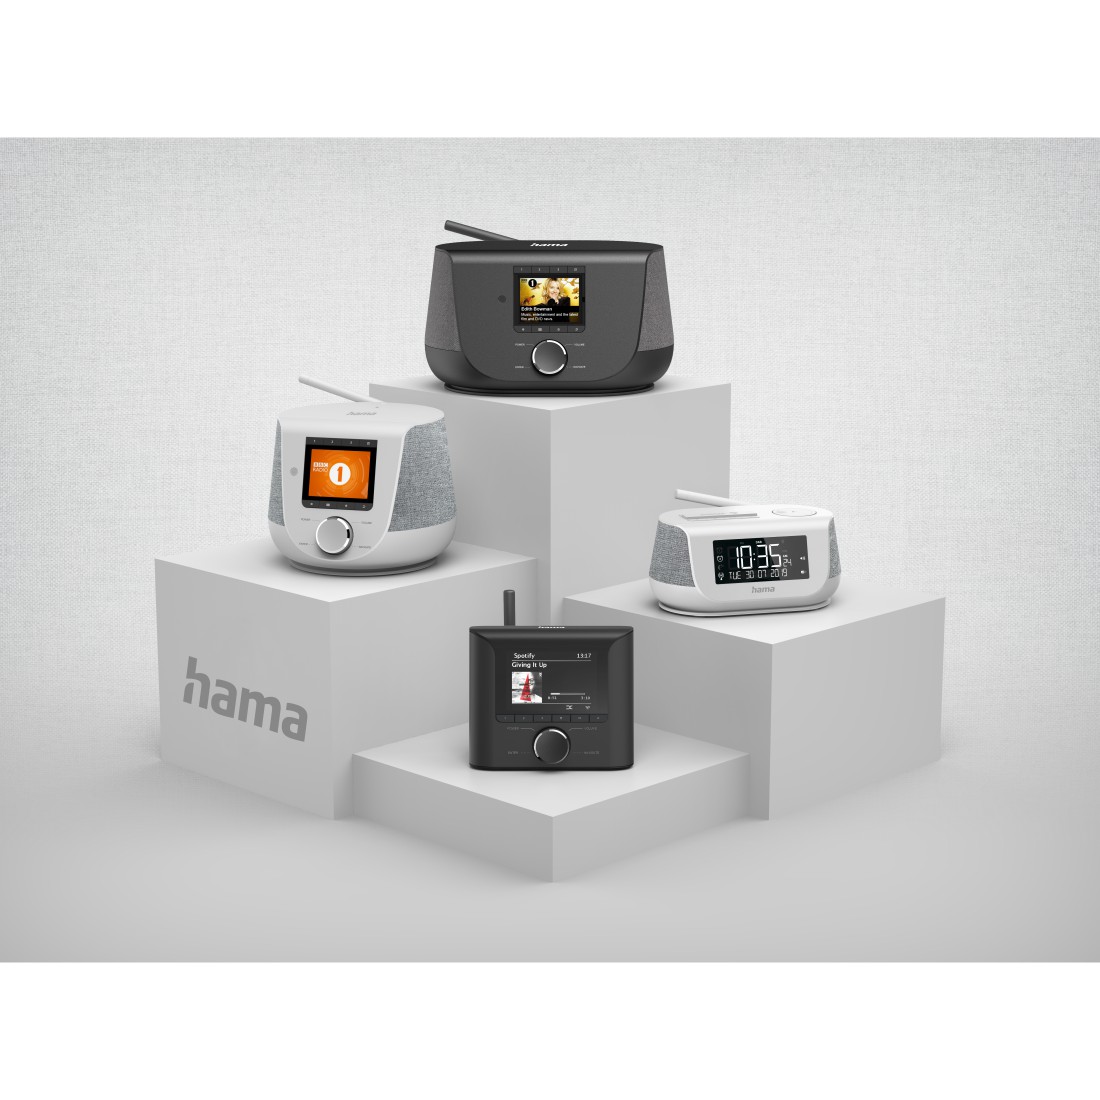 Hama stellt neuen Adapter für DAB+ im Auto vor -  News